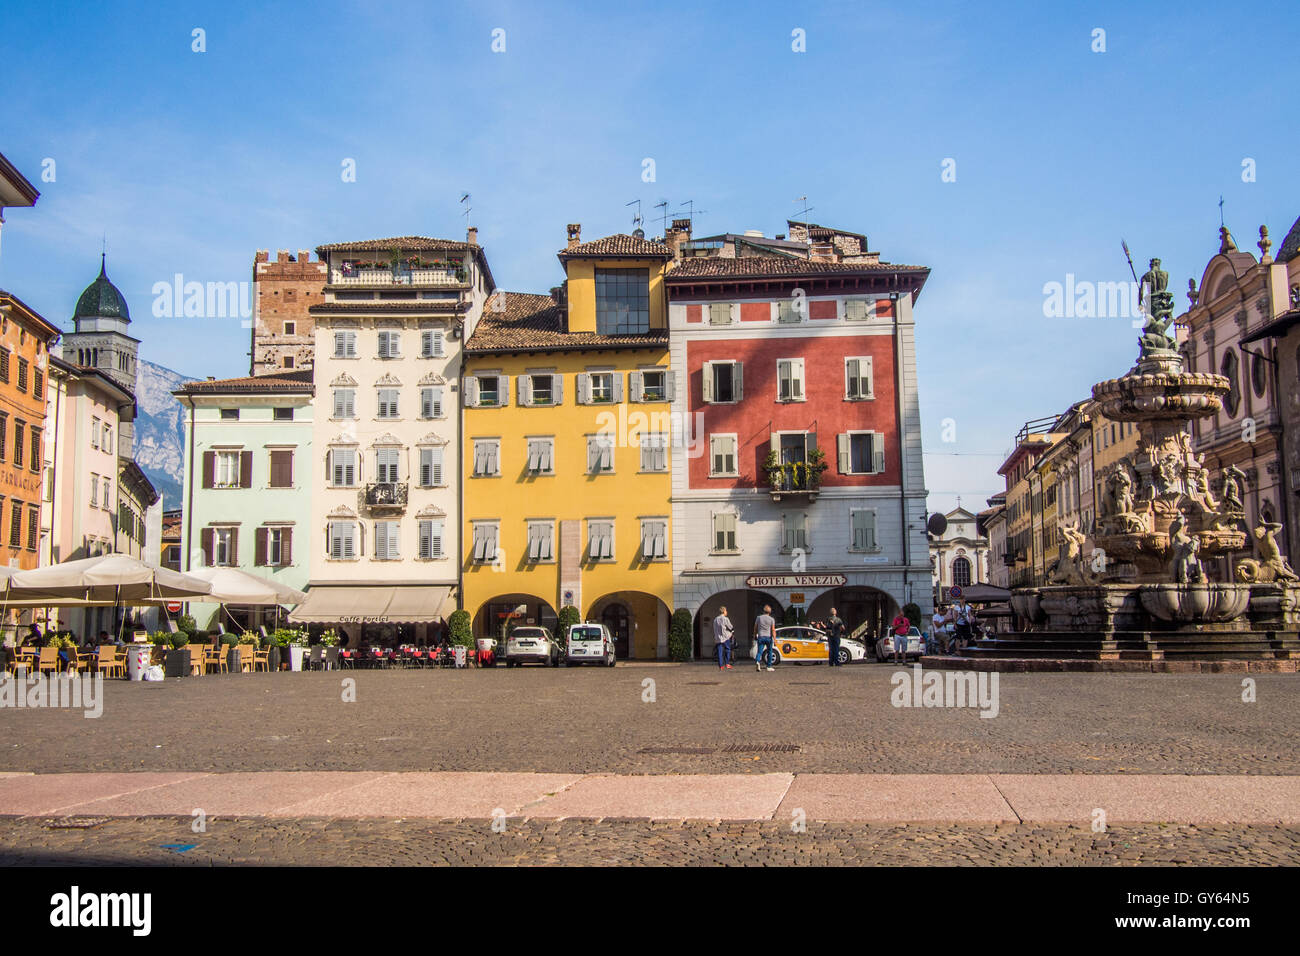 Piazza Duomo tra cui la fontana del Nettuno, Trento città e provincia, regione Trentino-Alto Adige, Italia. Foto Stock